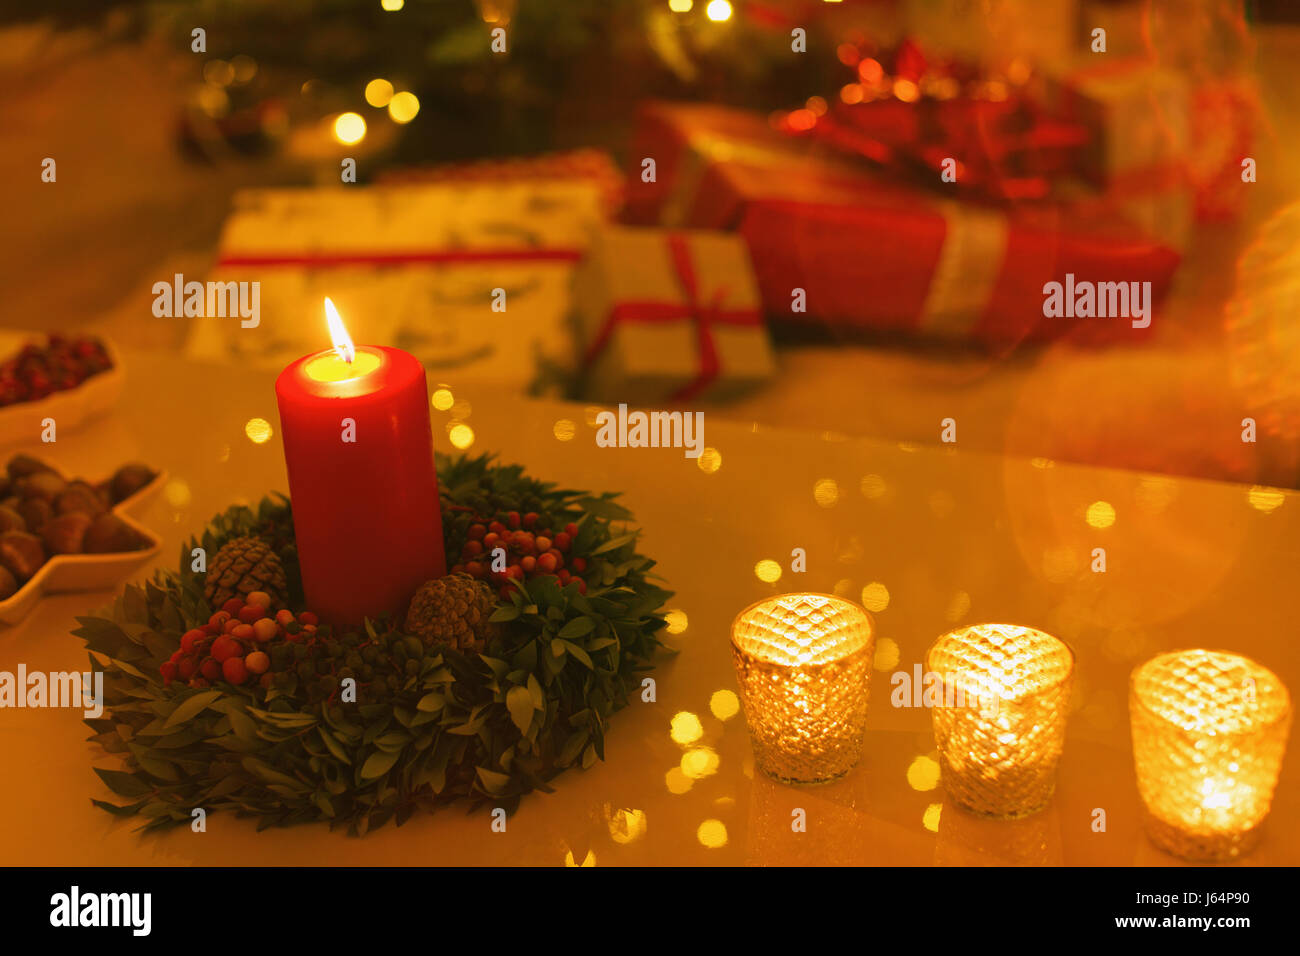 Bougies de table de Noël sur l'air ambiant Banque D'Images